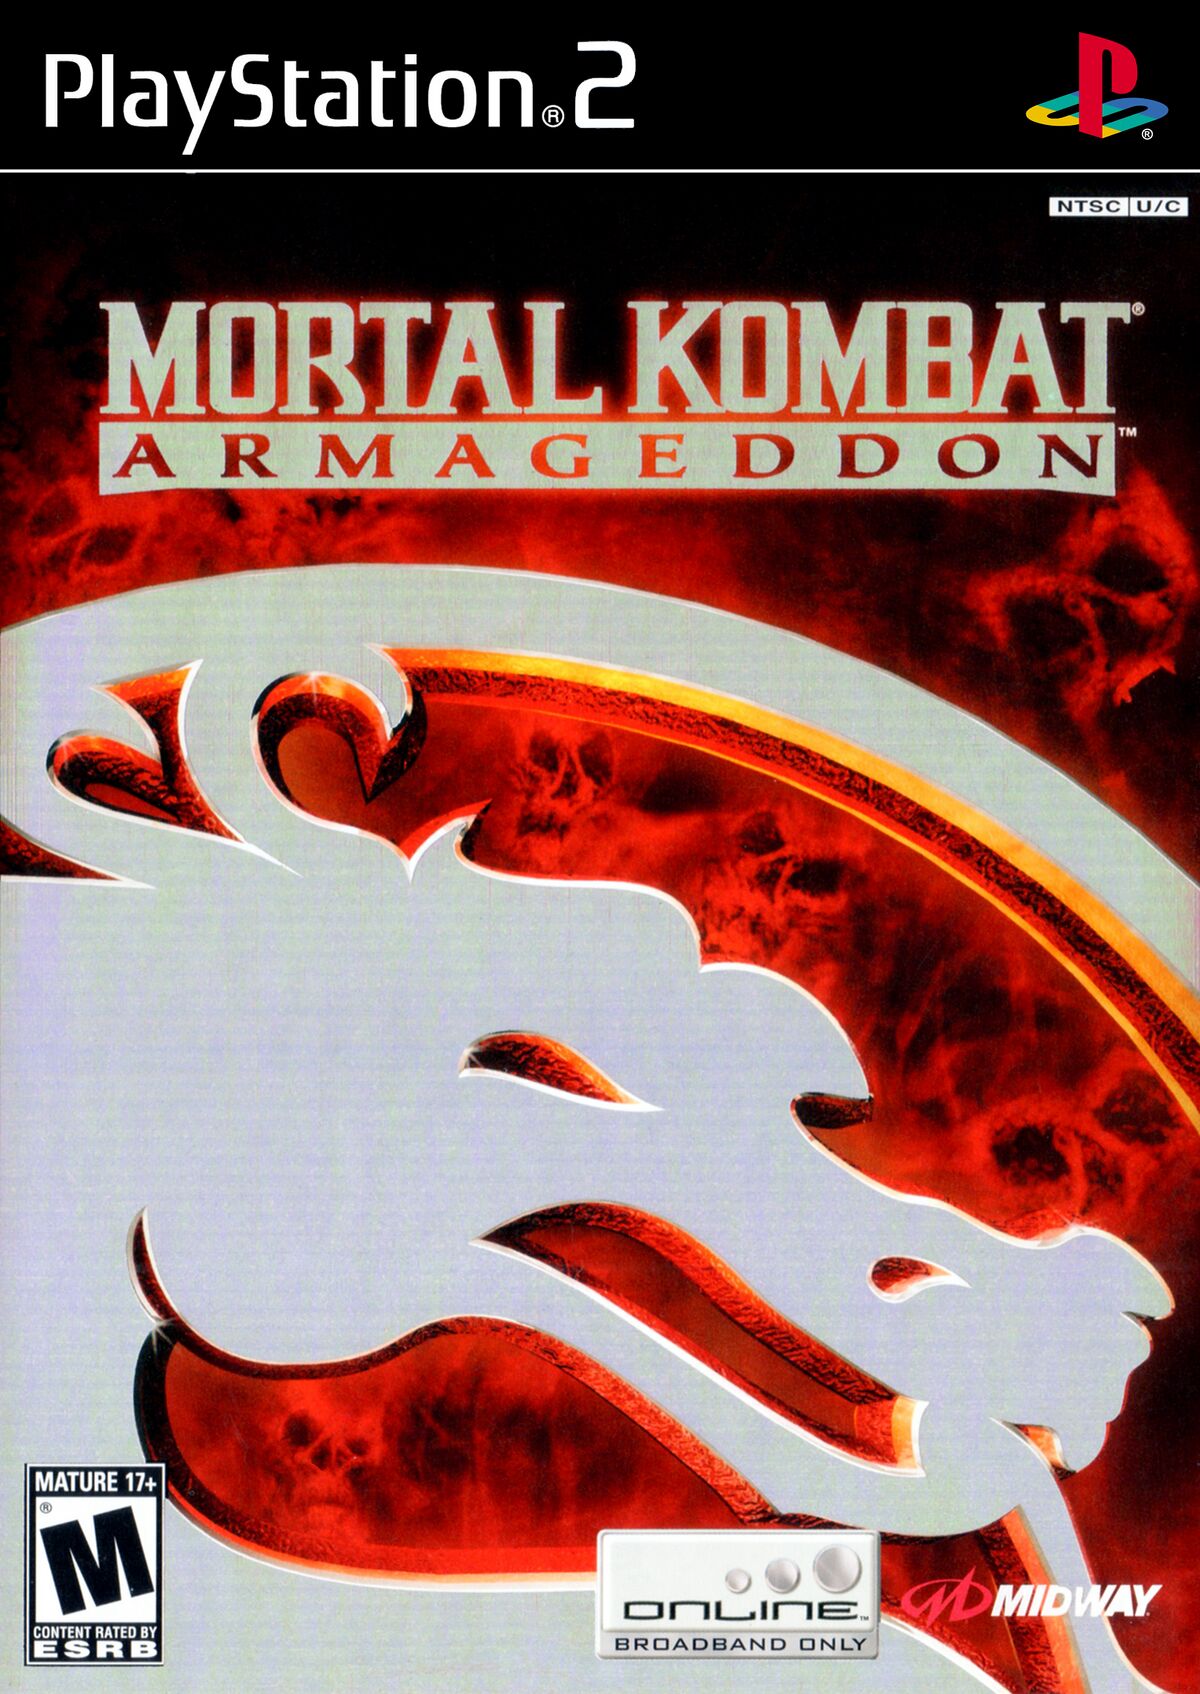 Shao Kahn, Mortal Kombat Wiki